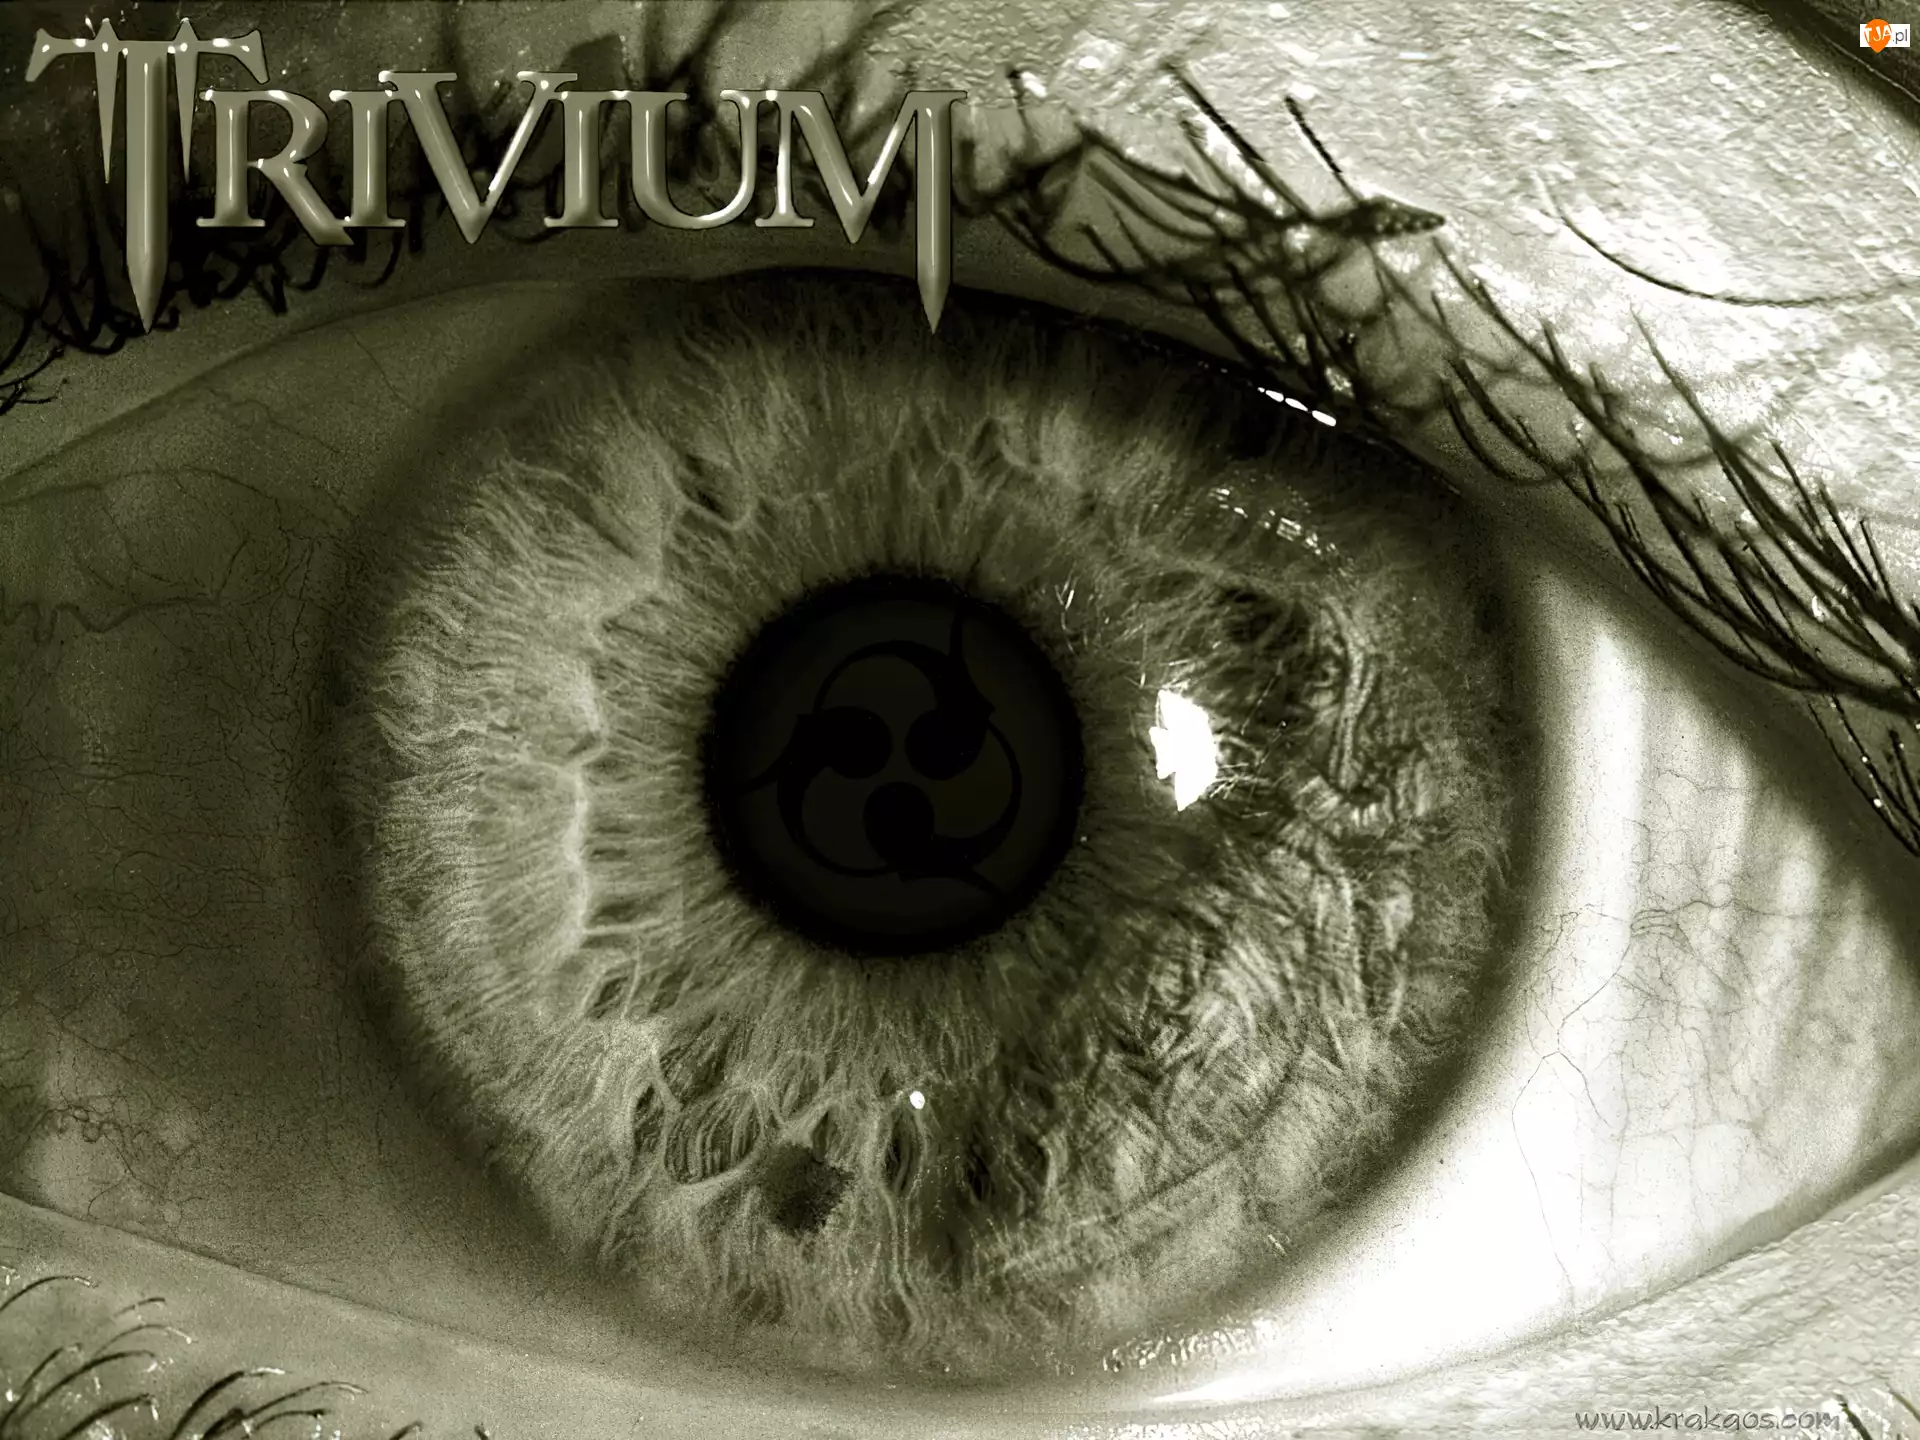 oko, Trivium